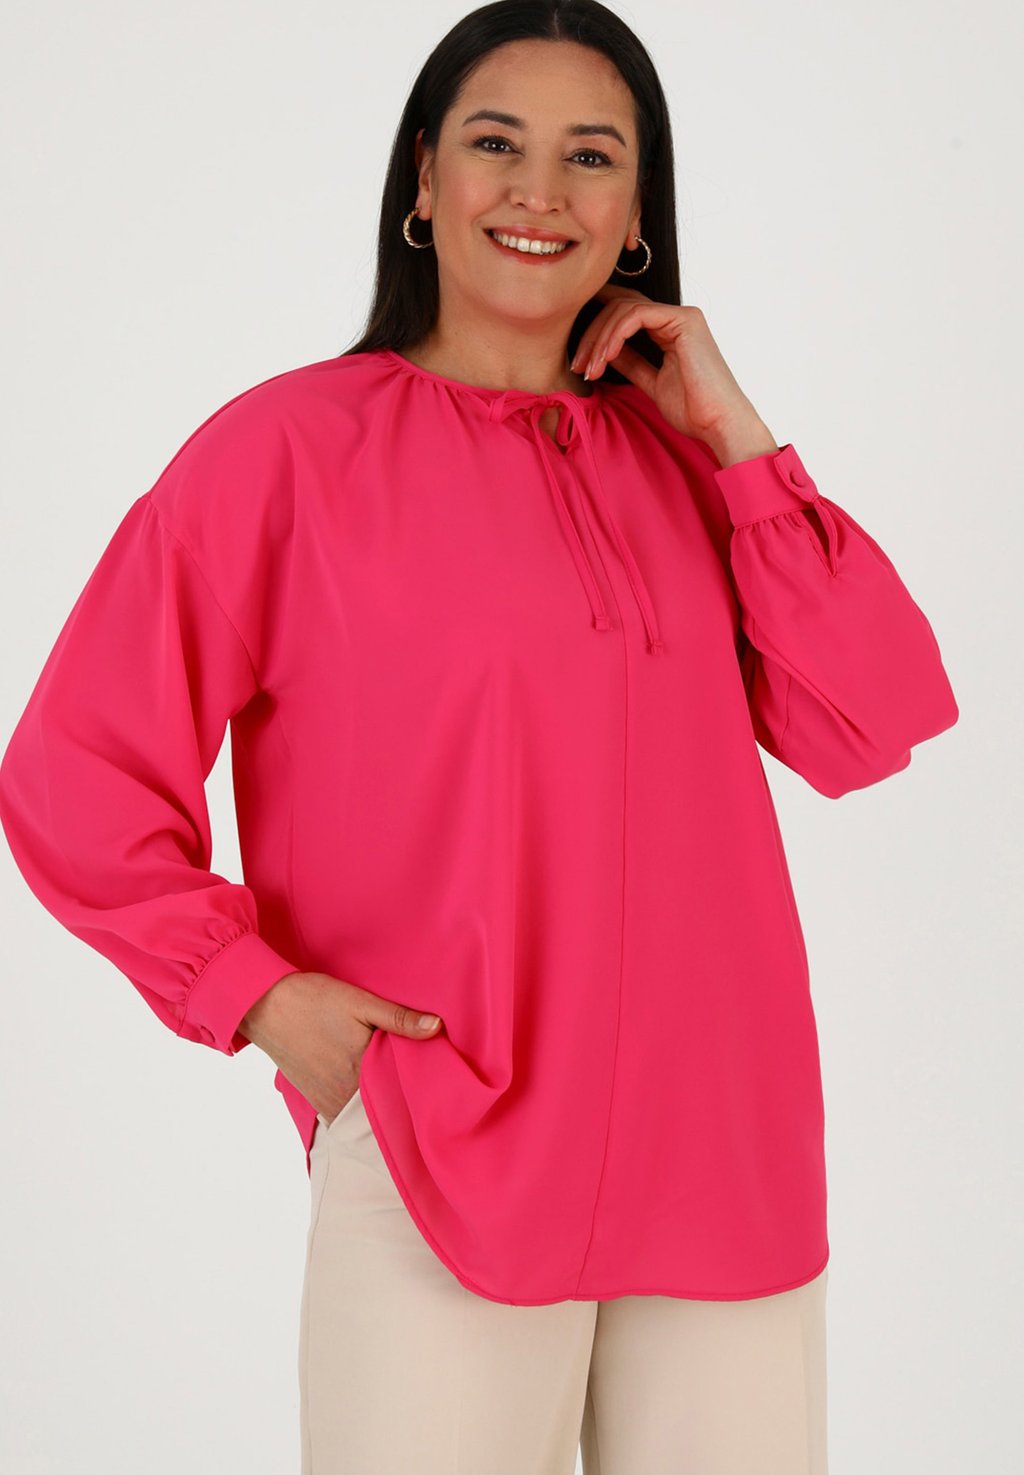 Блузка CREW NECK PLUS SIZE ALIA Modanisa, розовый блузка alia modanisa темно коричневый